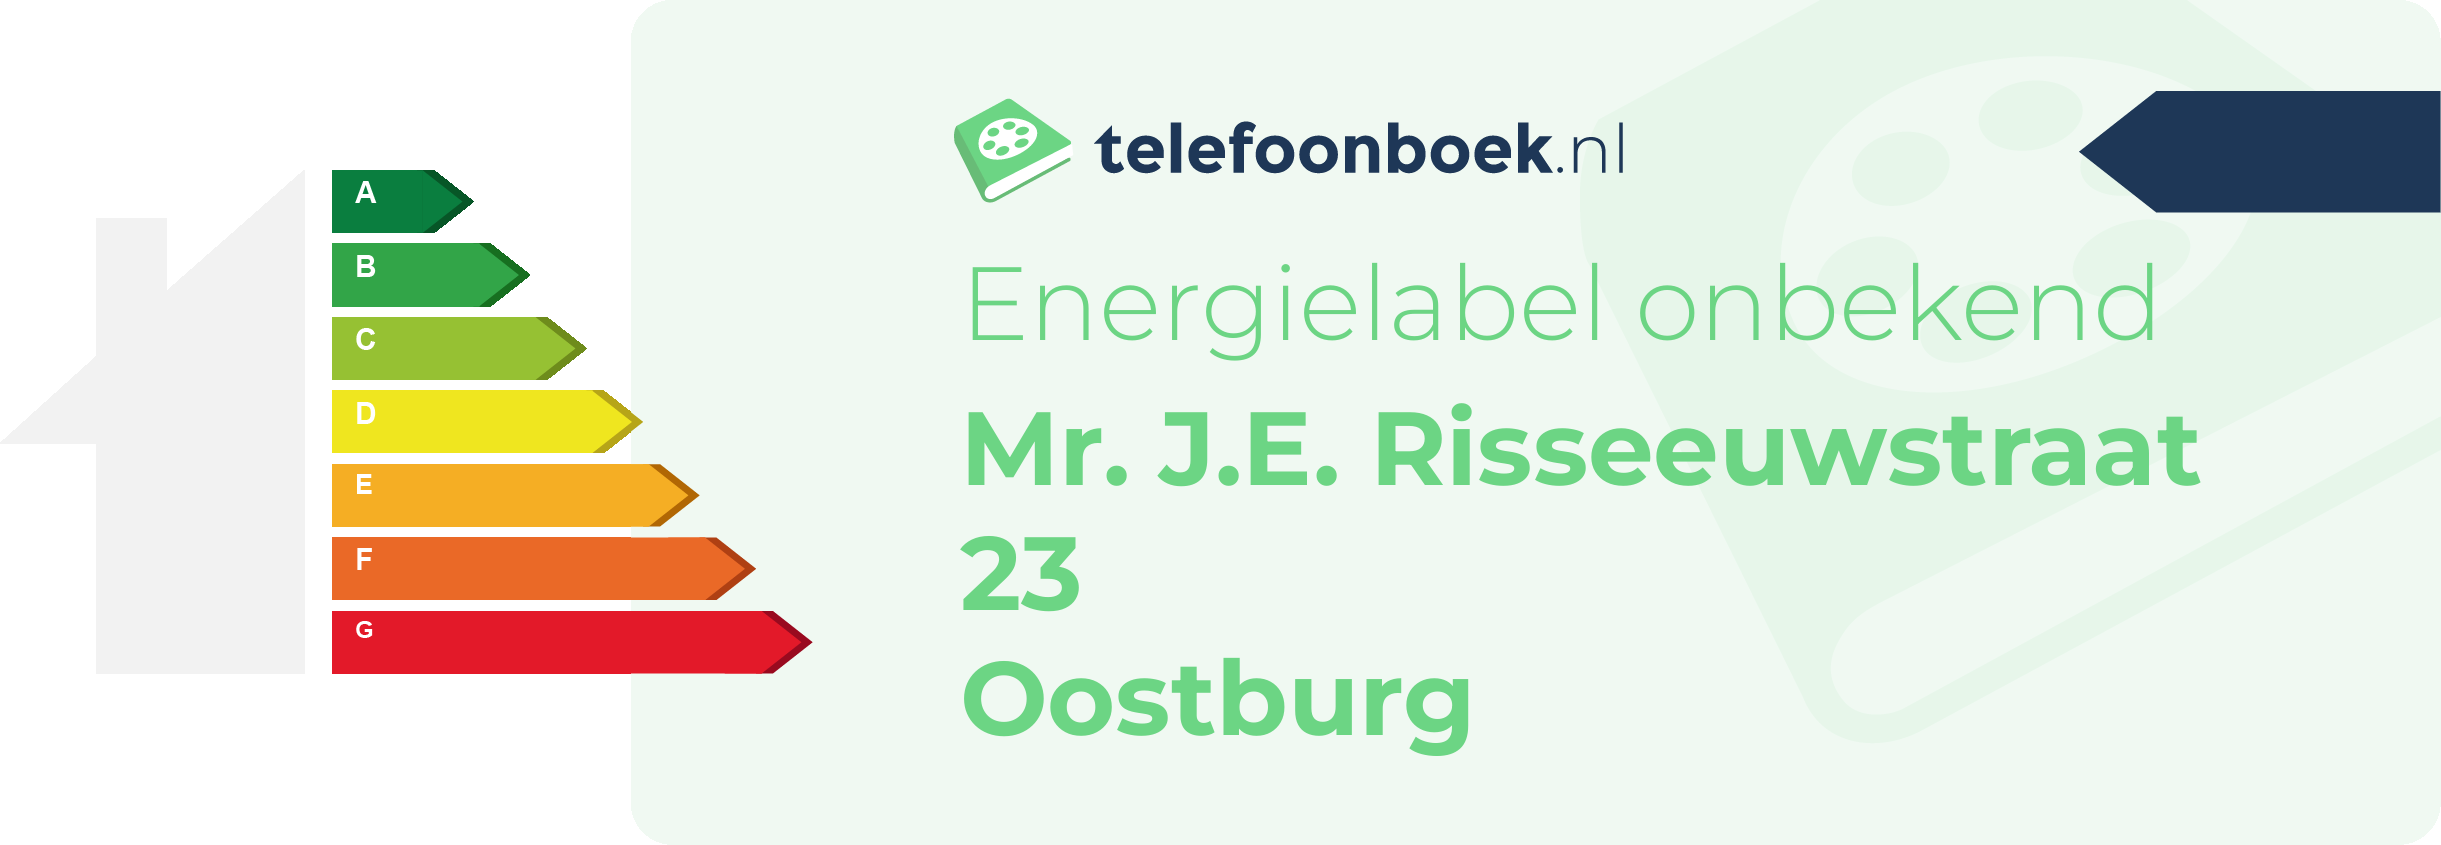 Energielabel Mr. J.E. Risseeuwstraat 23 Oostburg